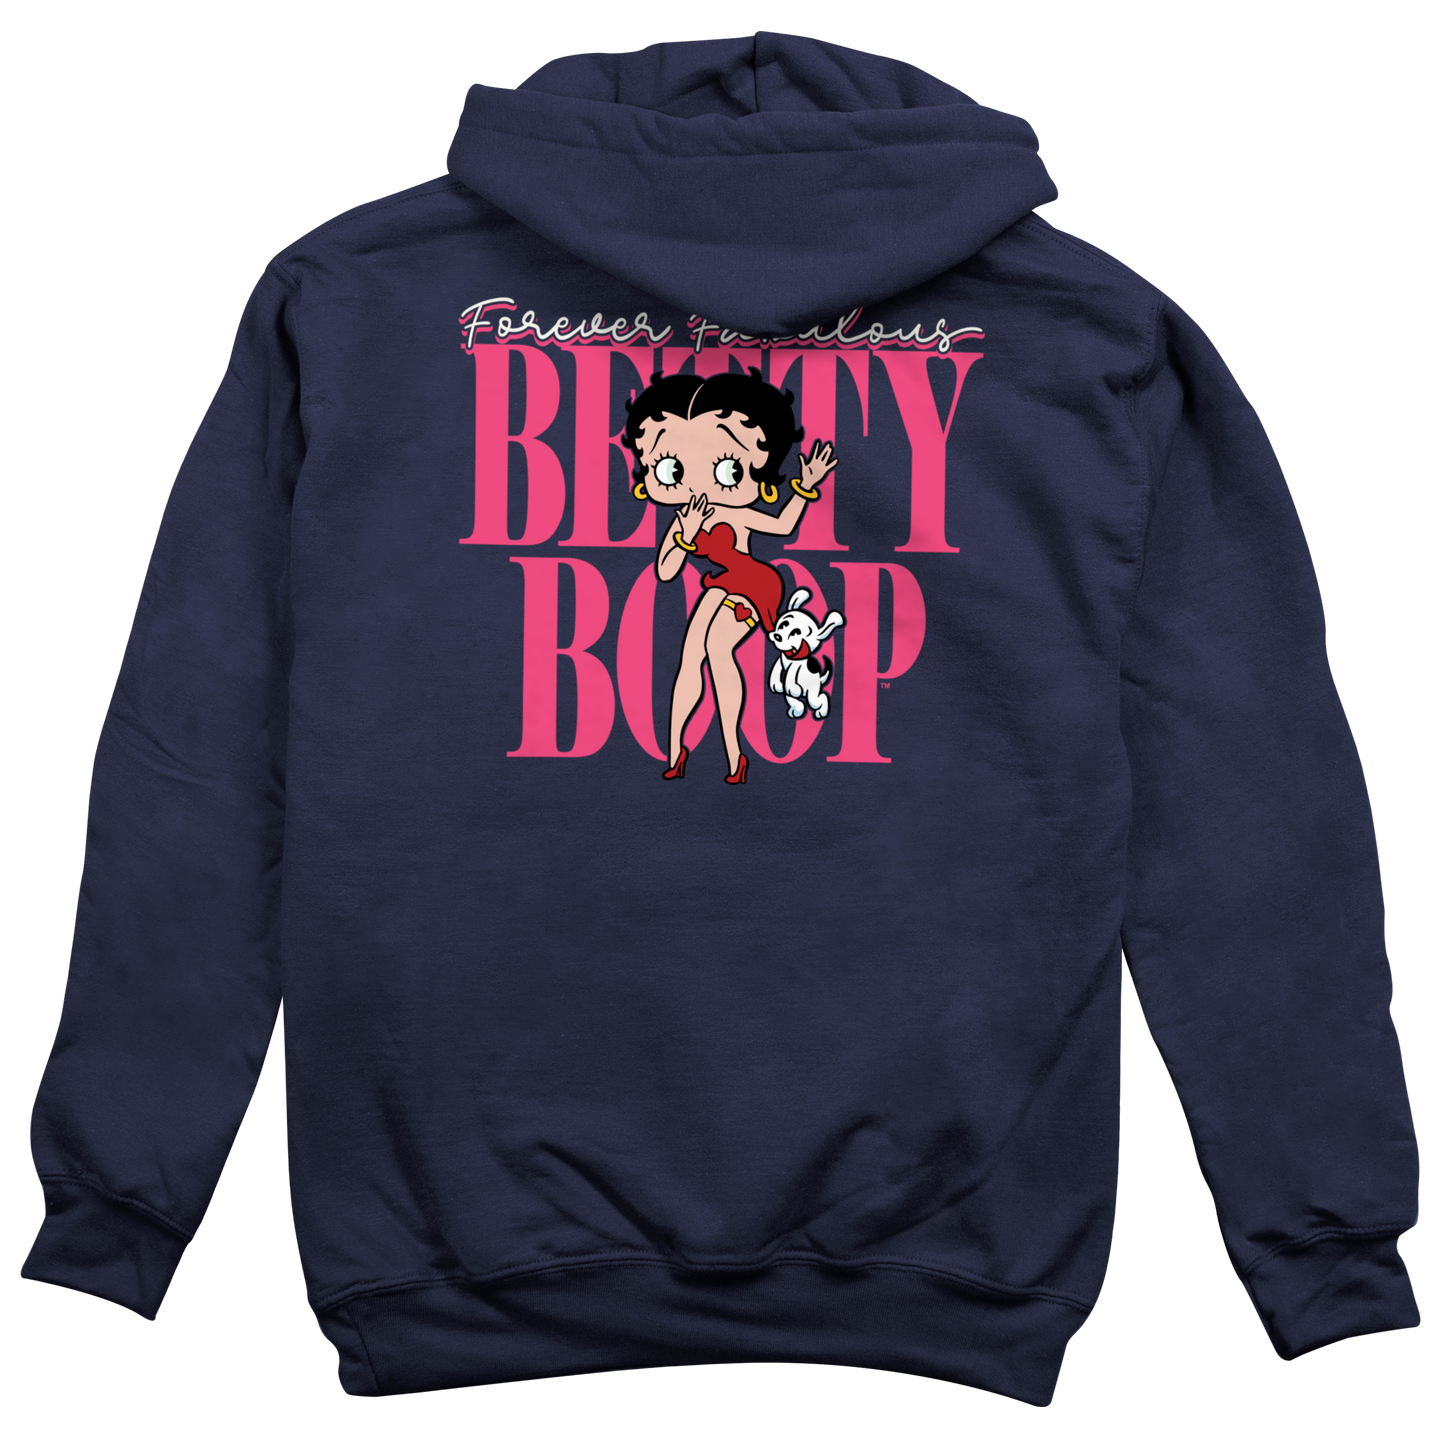 Forever Fabulous Betty Hoodie, Betty Boop Hooded Sweatshirt